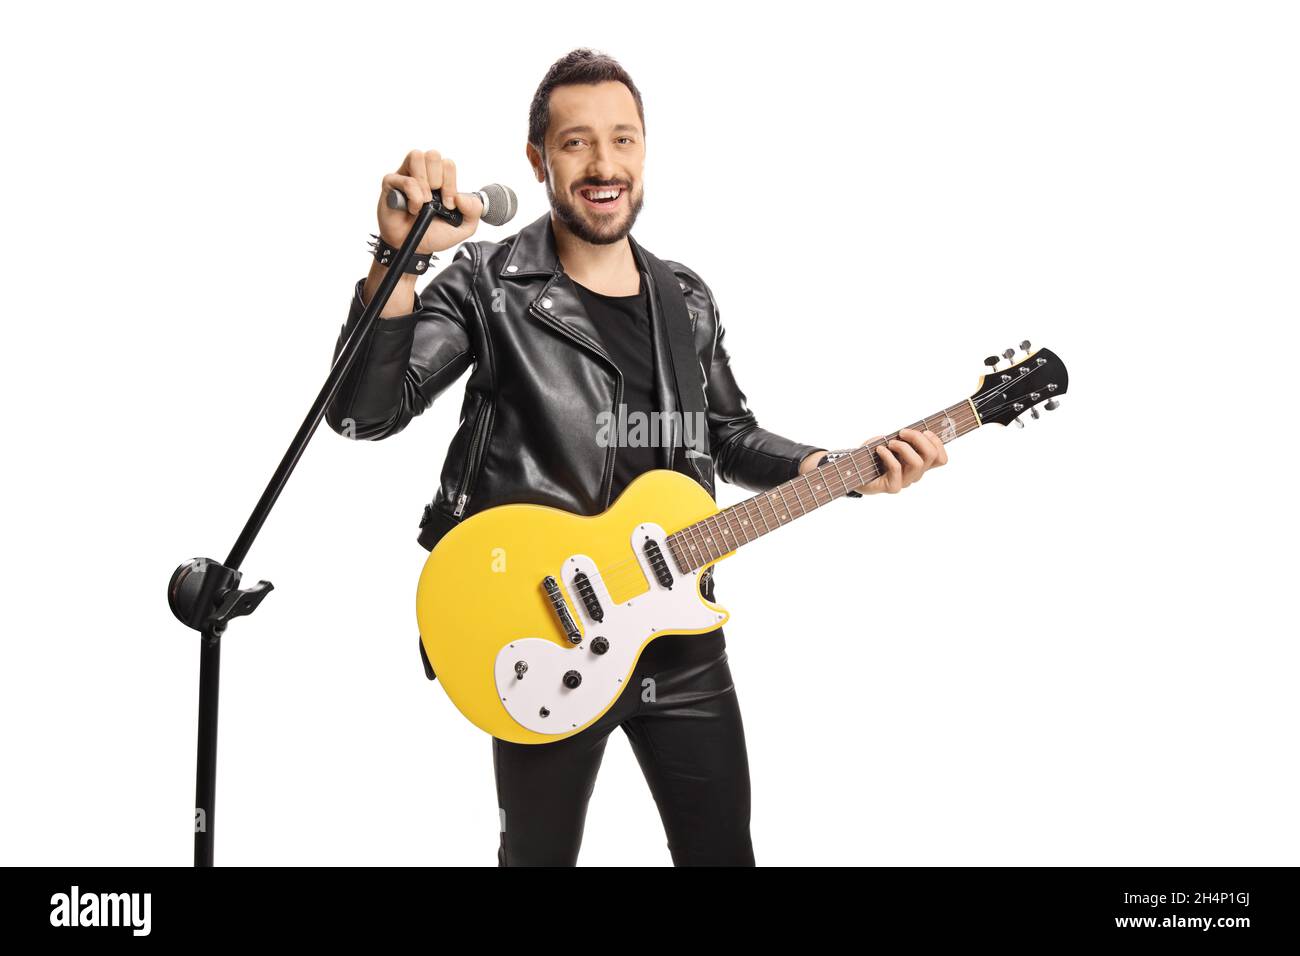 Männlicher Rockstar mit einer E-Gitarre, die auf einem Mikrofon singt, das auf weißem Hintergrund isoliert ist Stockfoto